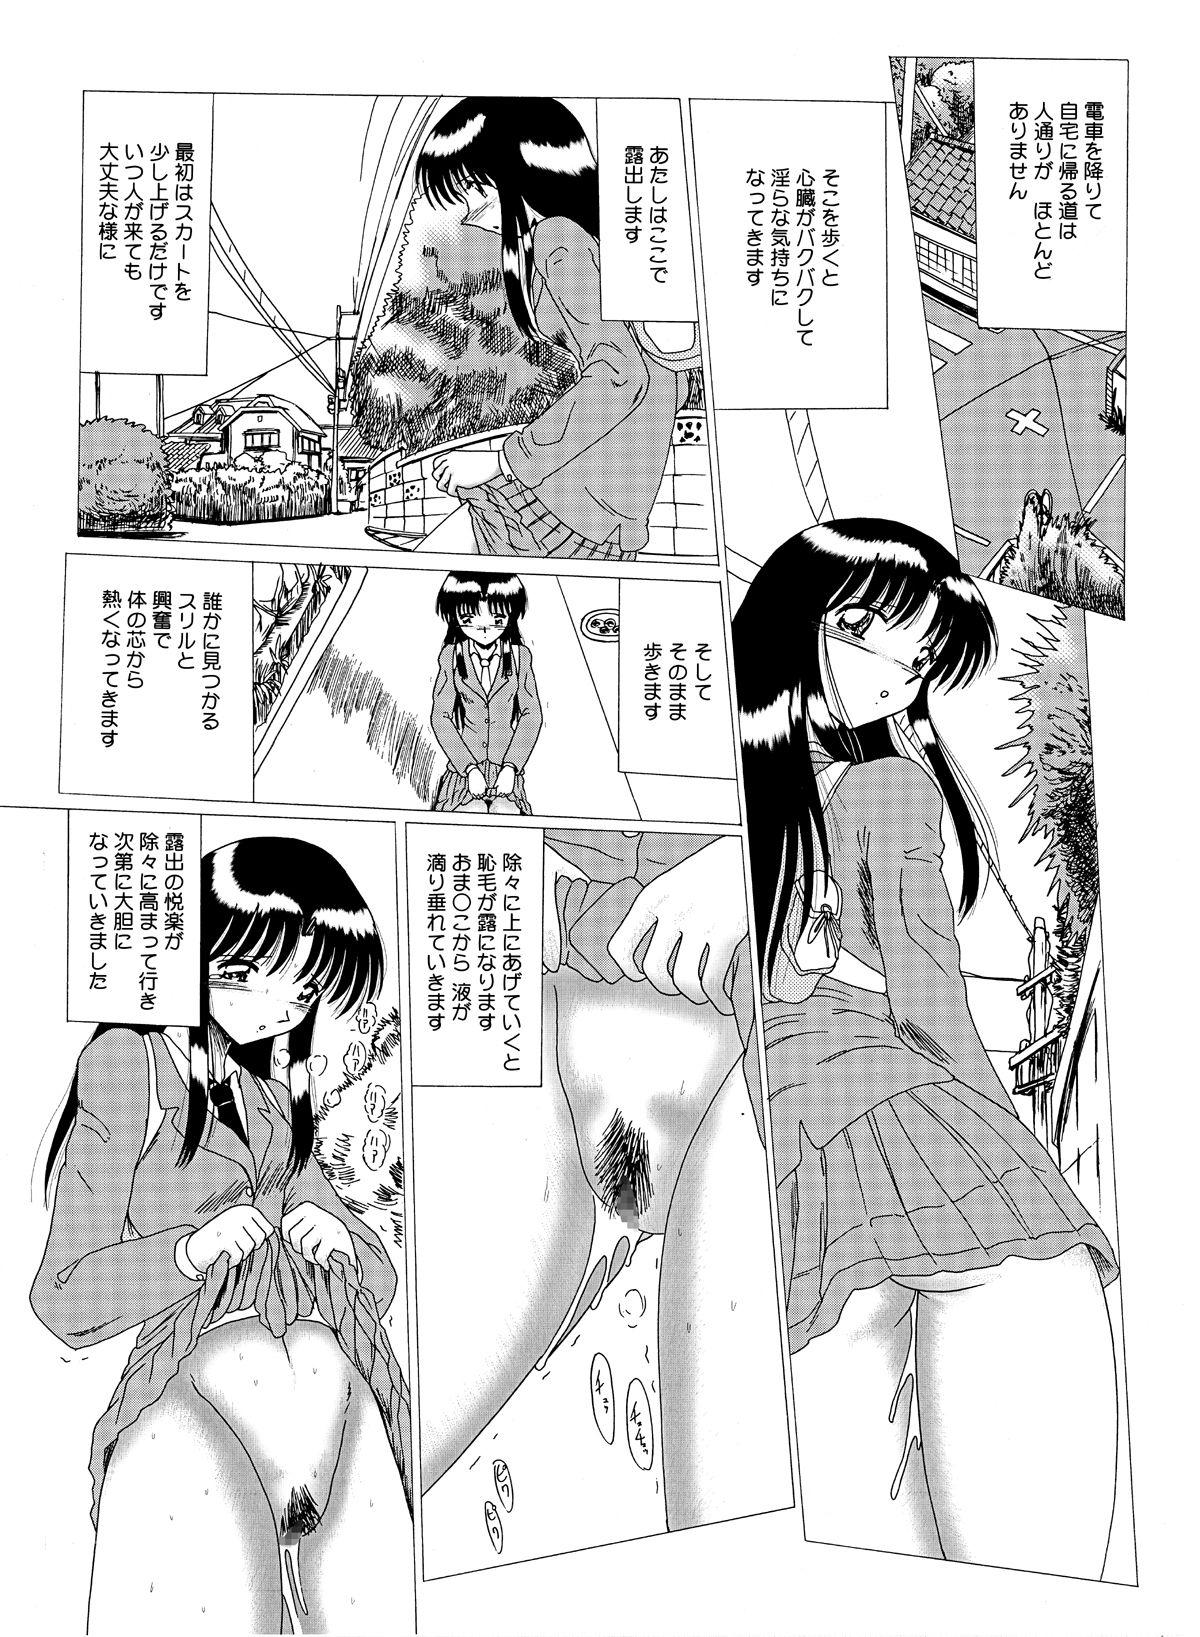 Alone Shinsei Maso no Kiroku 1 - Original Family Sex - Page 7